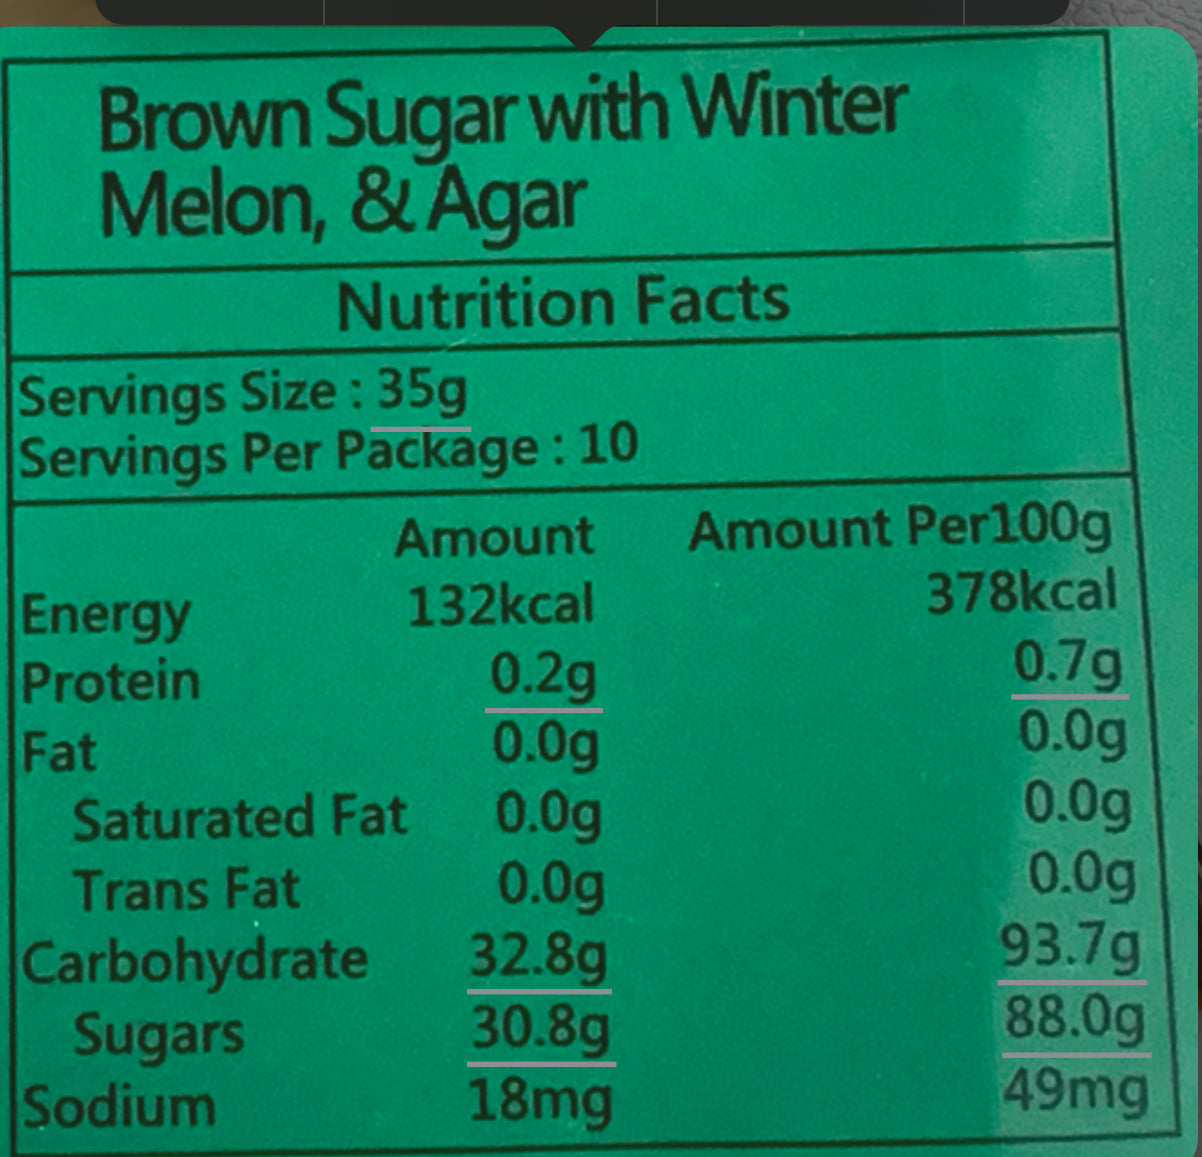 Brown Sugar with Winter Melon & Agar